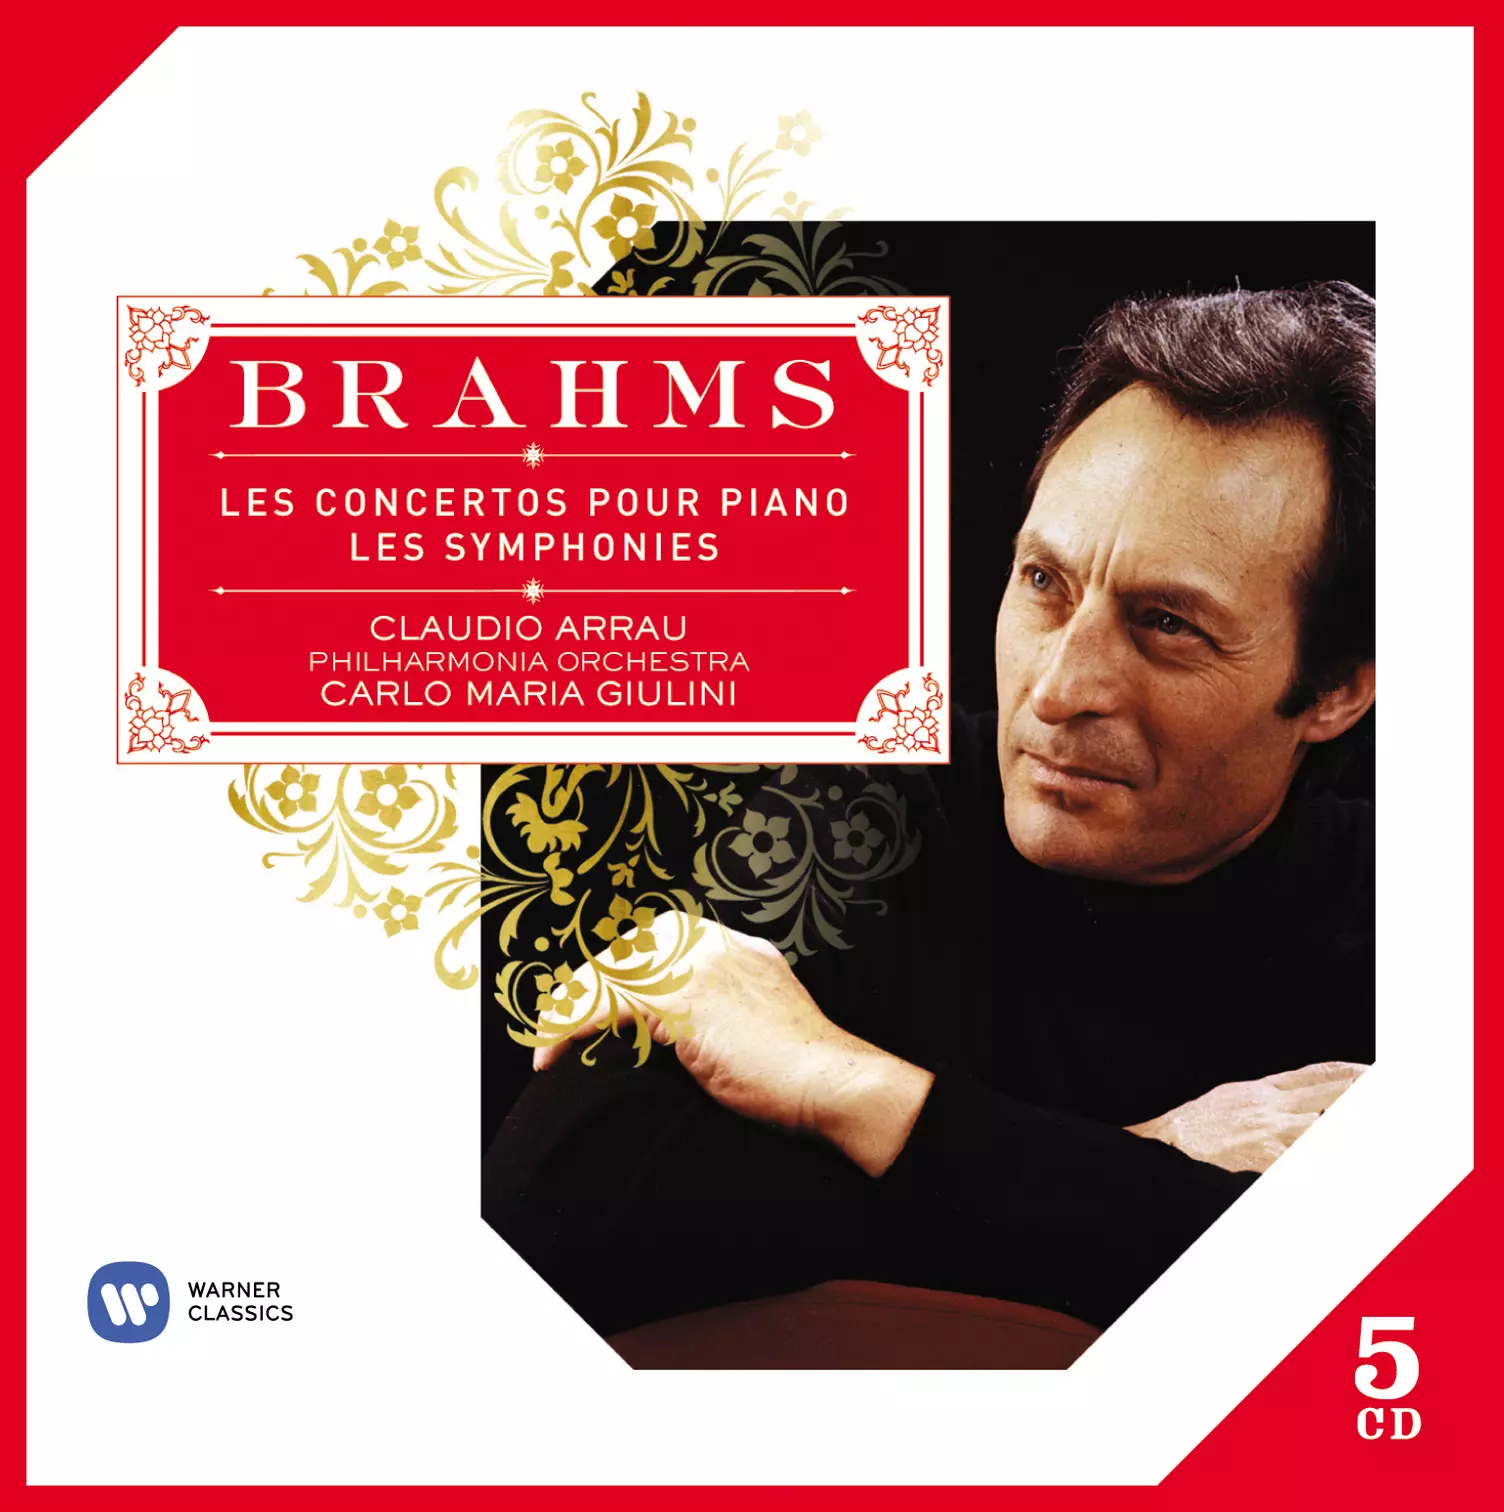 Brahms: Symphonies, Ouvertures, Concertos Pour Piano